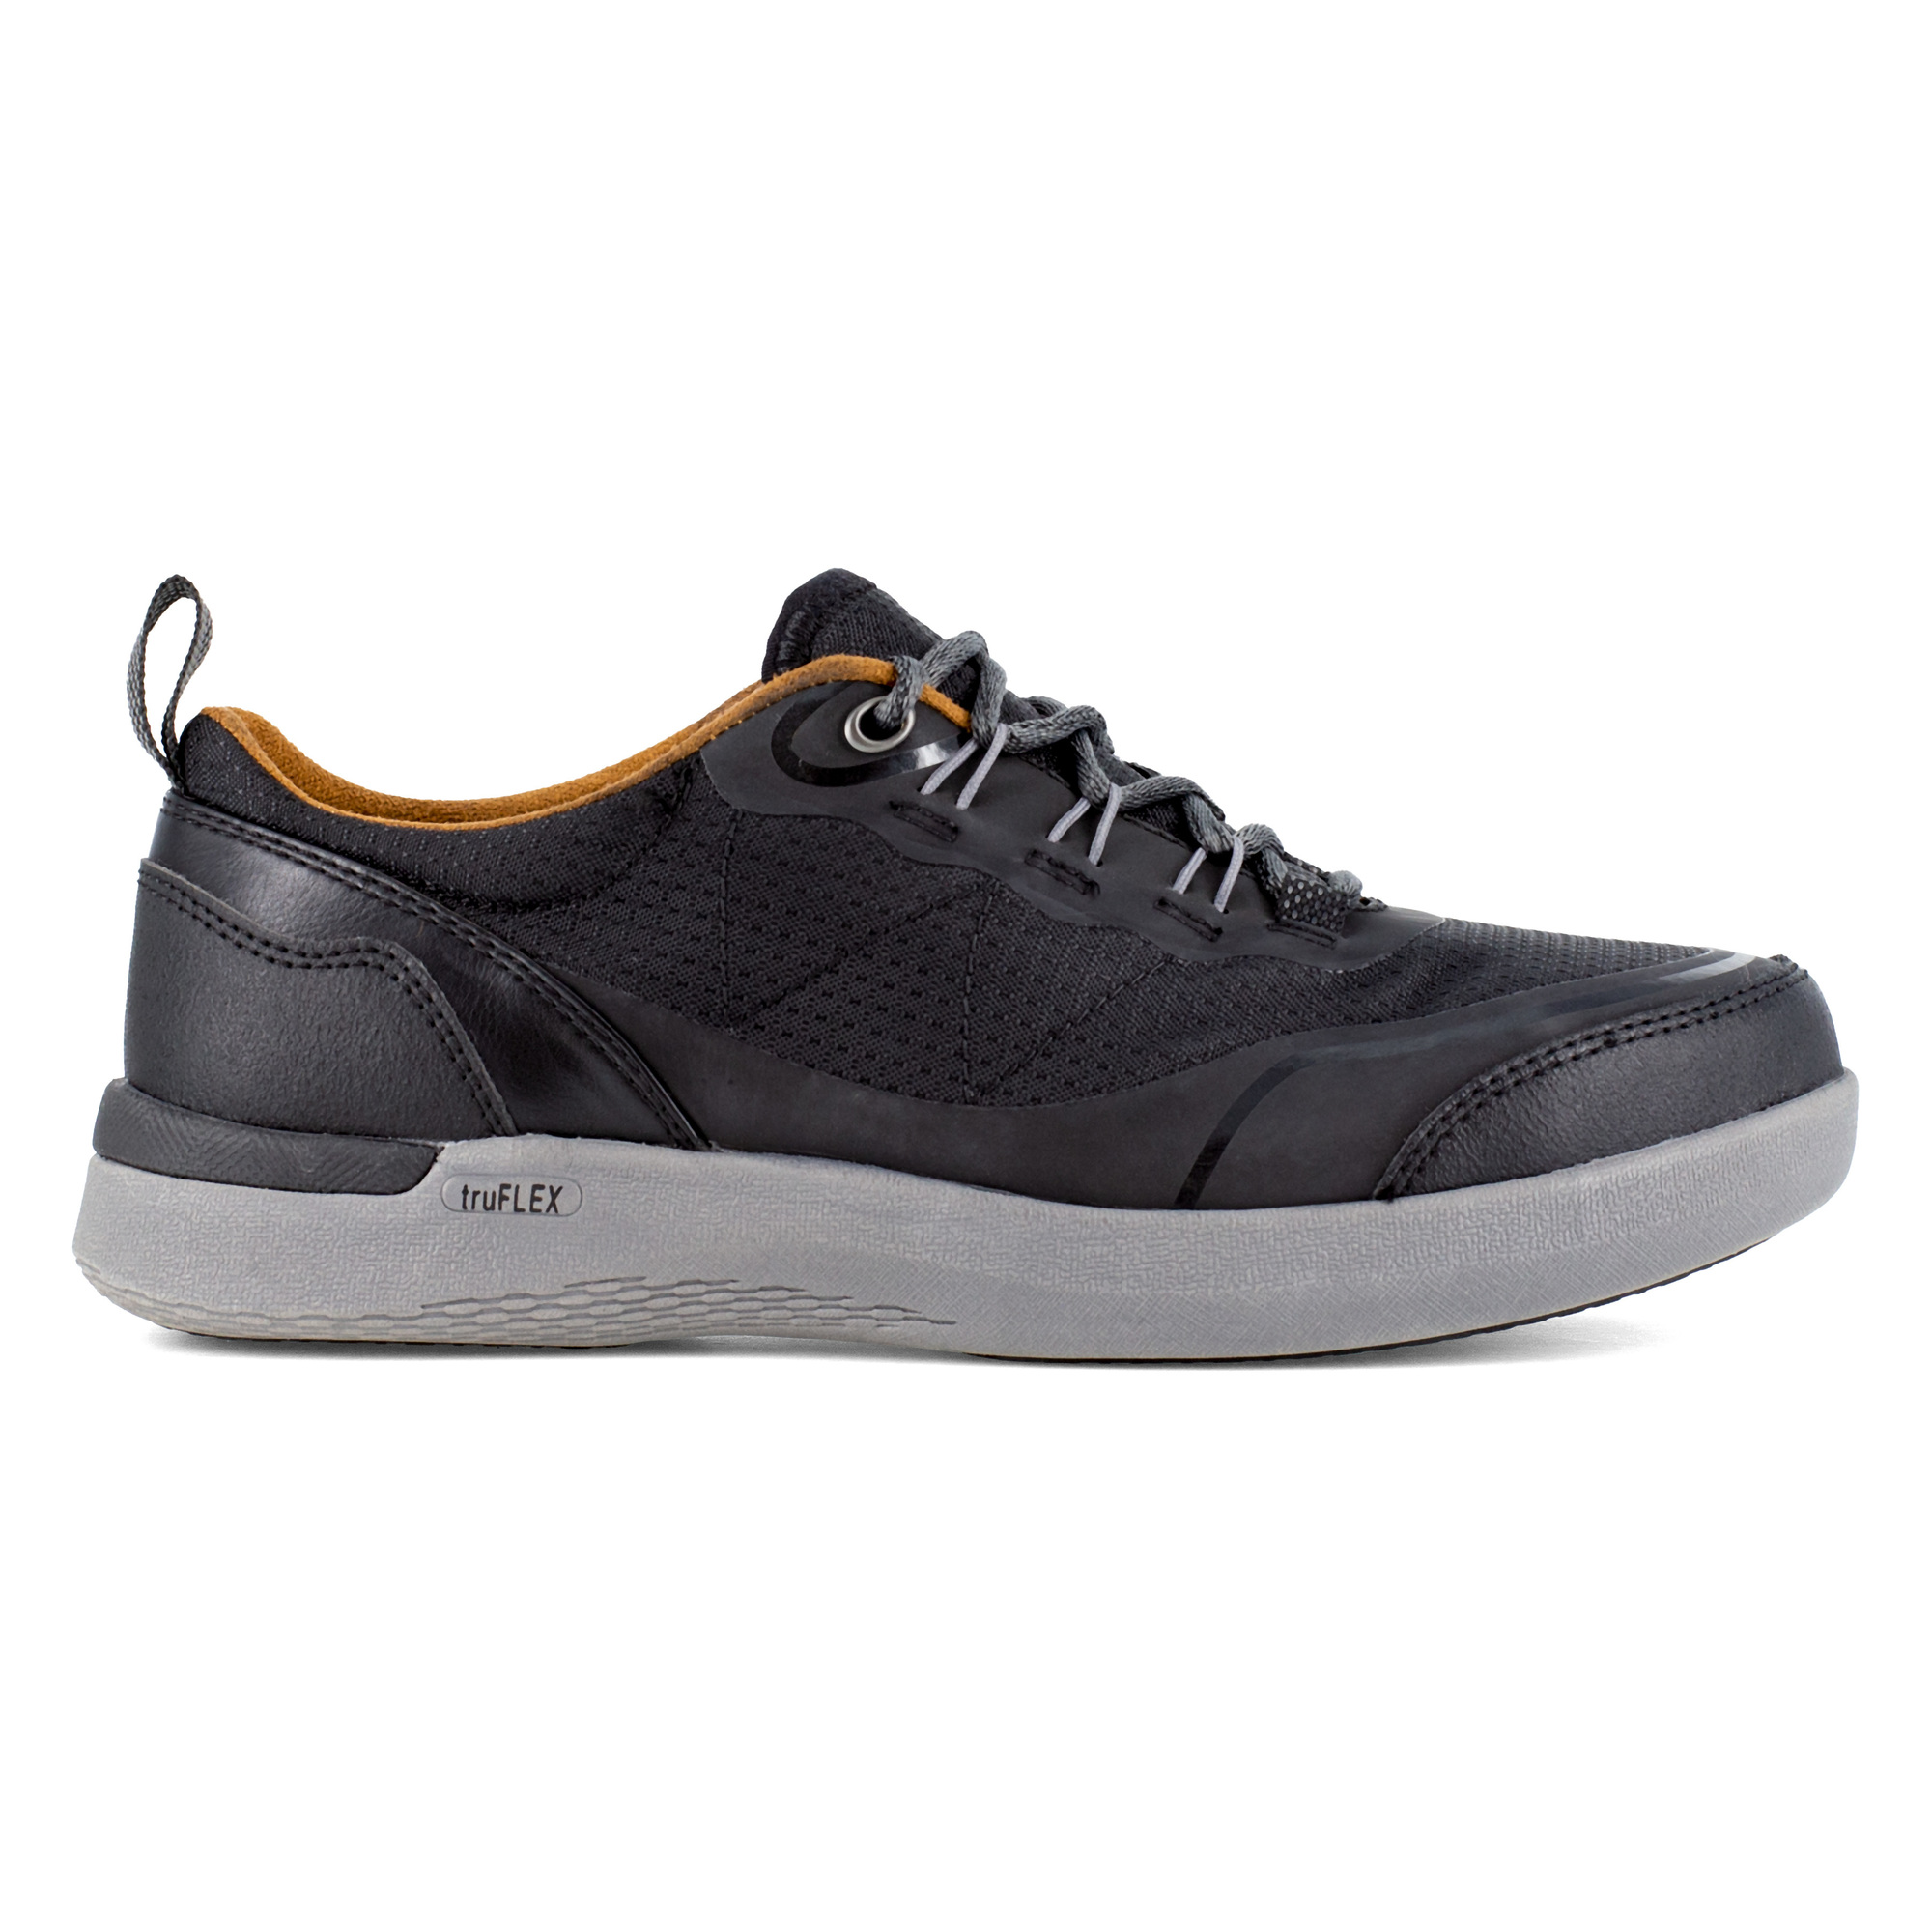 Rockport Works, Work Sneaker, Size 7 1/2, Width Wide, Color Black, Model RK687